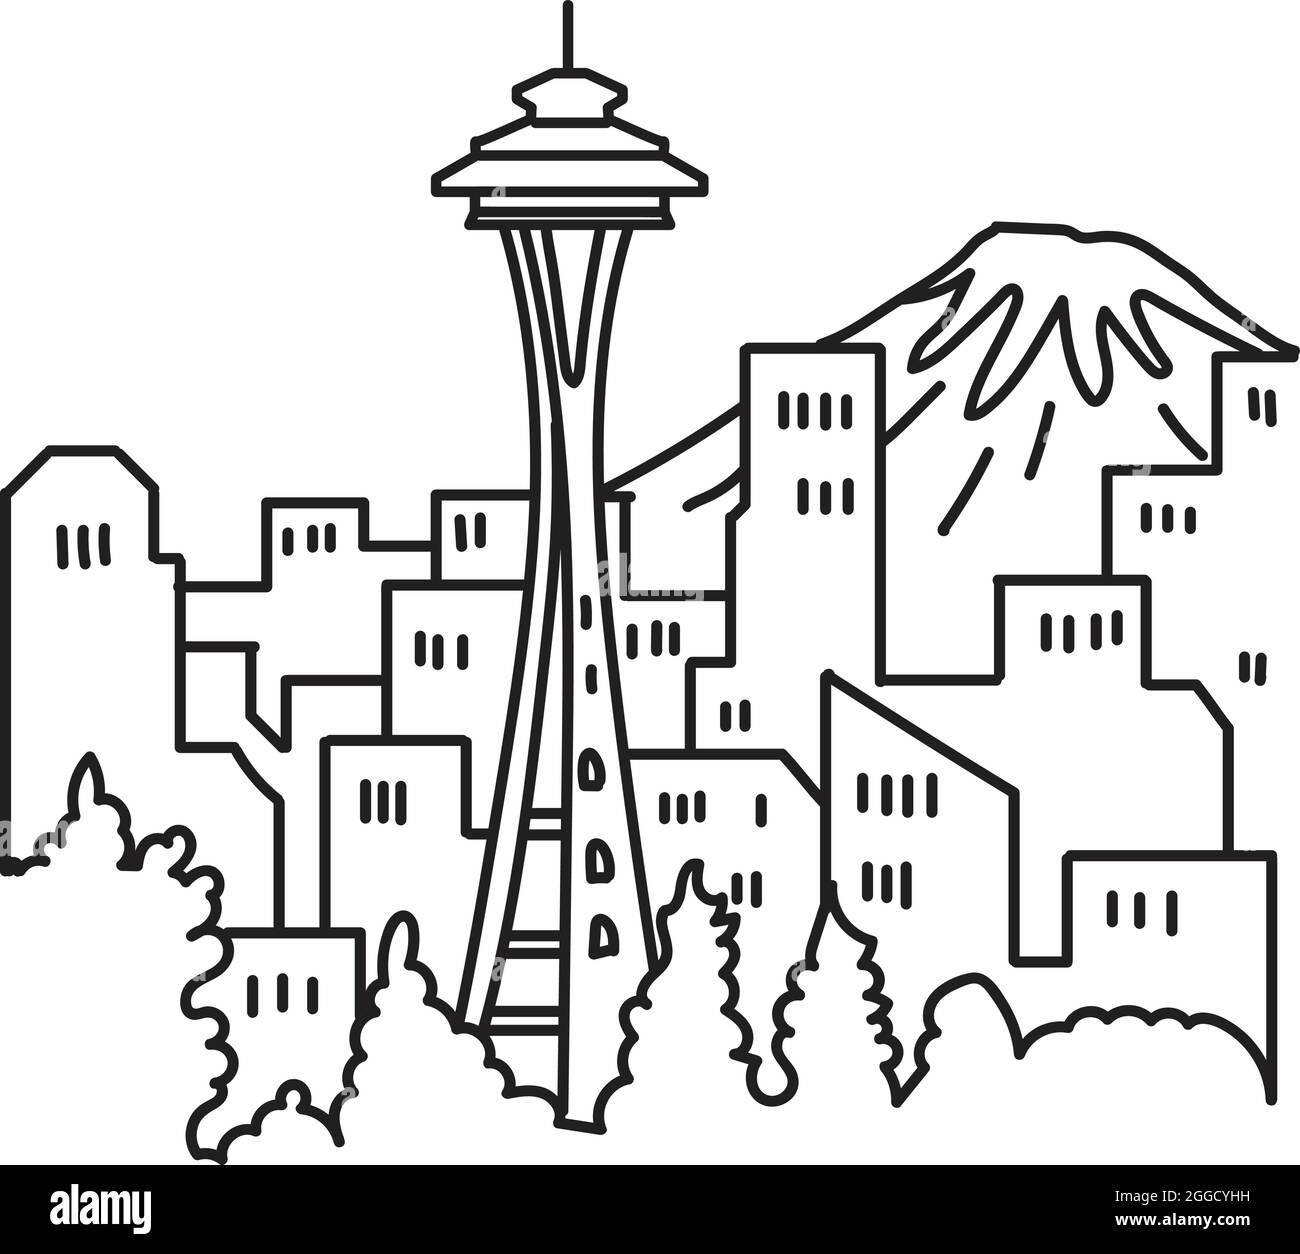 Illustrazione in mono linea dello skyline del centro di Seattle con il simbolo Space Needle e il Monte Rainier nello stato di Washington, USA fatto in linea monolina Illustrazione Vettoriale